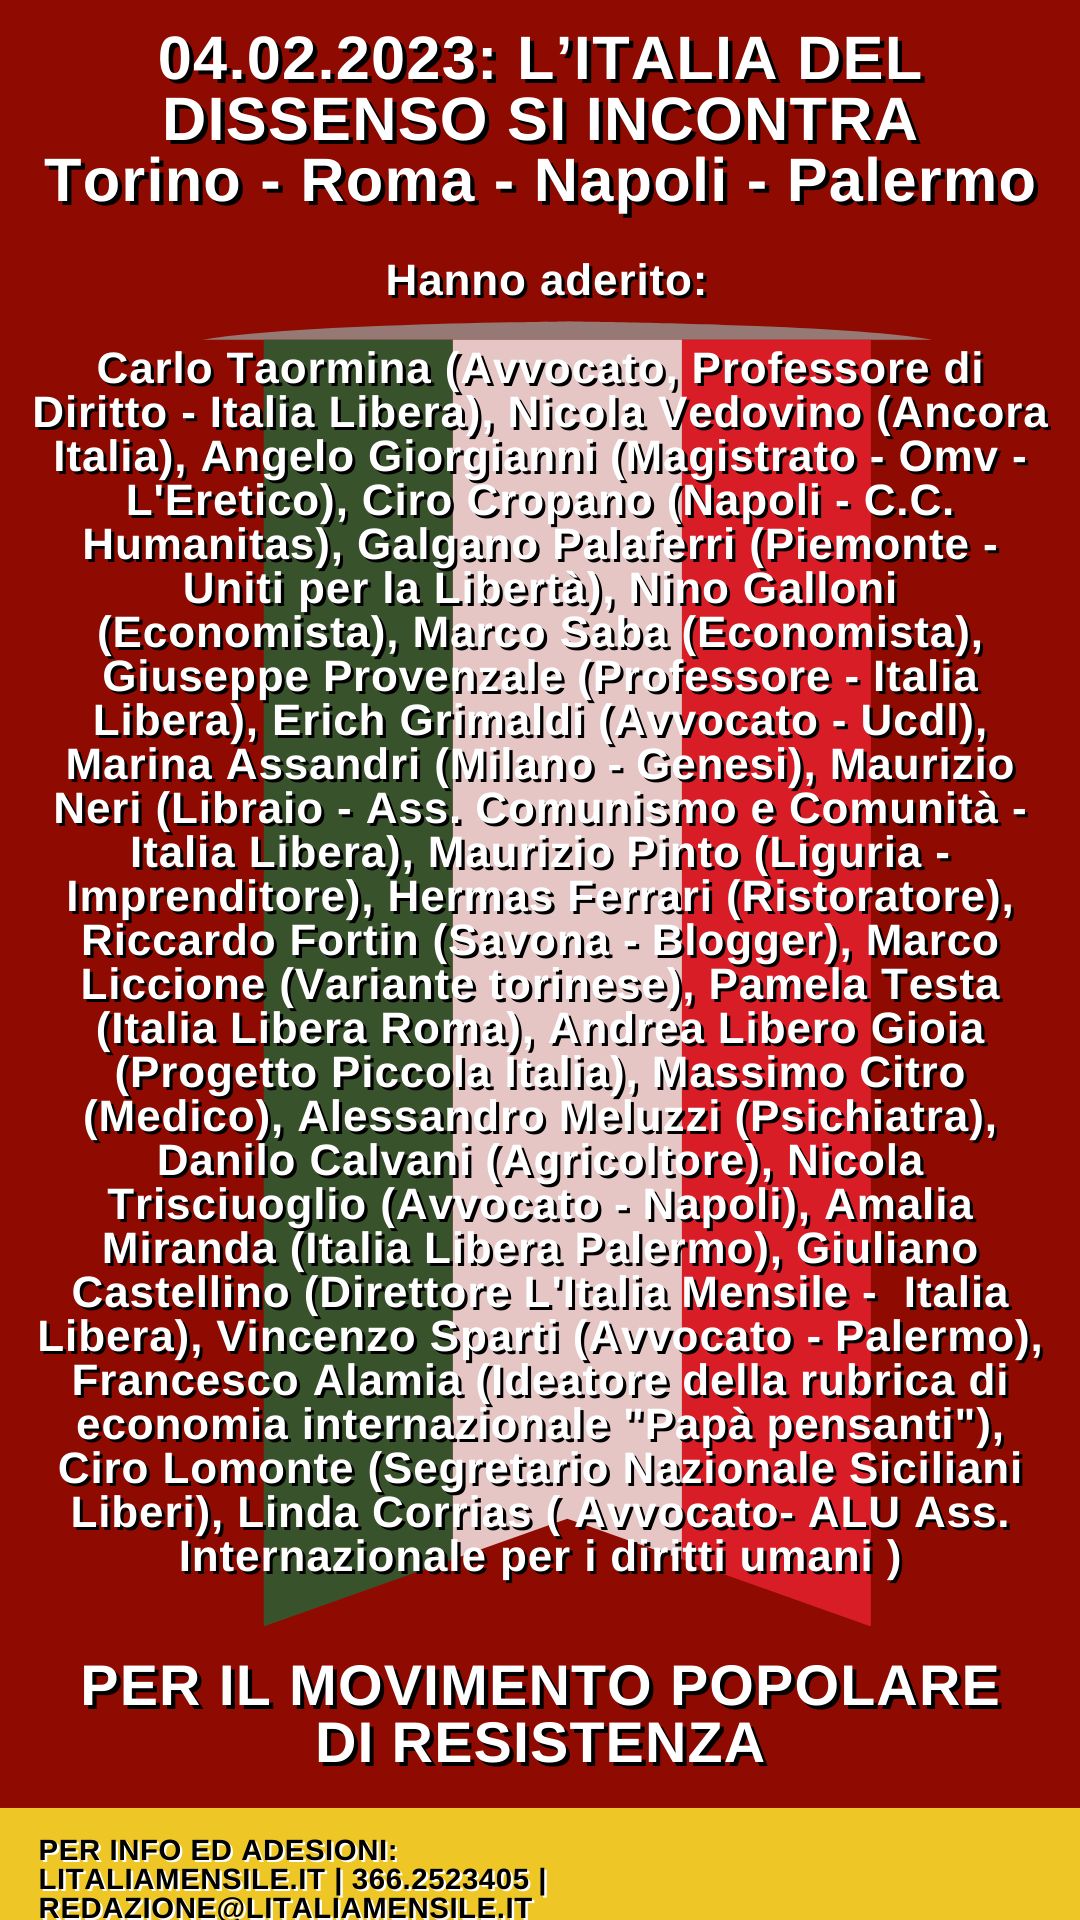 ITALIA LIBERA: SABATO 4 FEBBRAIO PER L’UNITÀ DEL FRONTE DEL DISSENSO